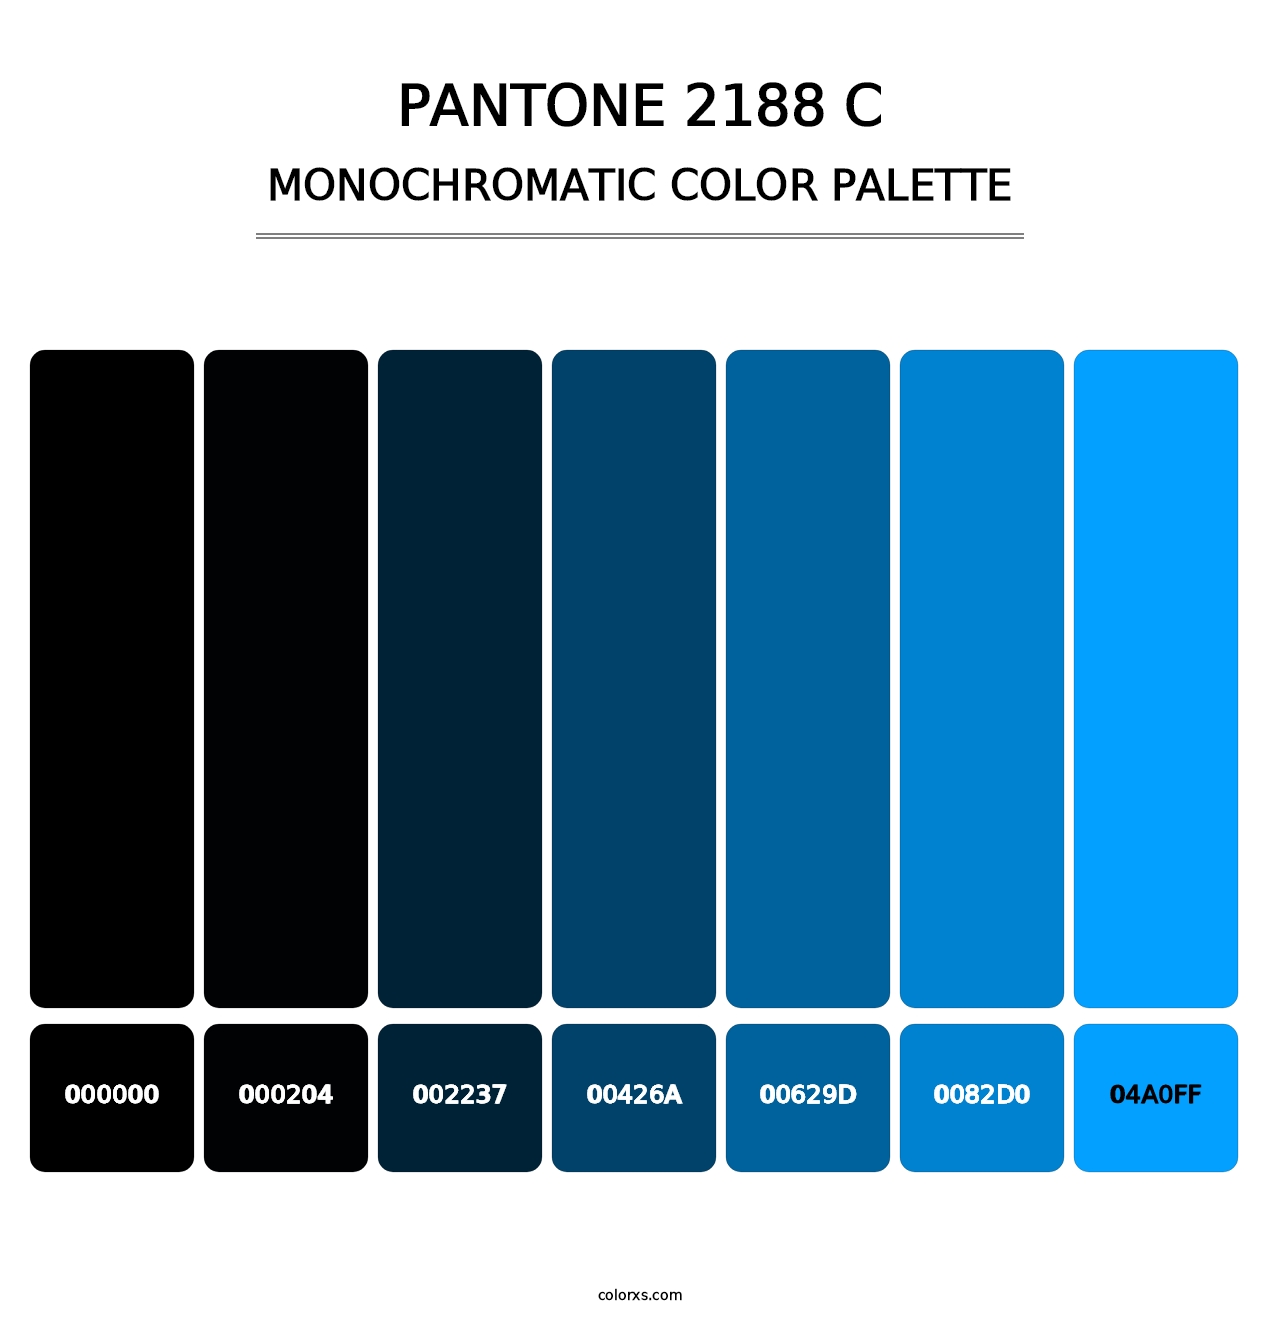 PANTONE 2188 C - Monochromatic Color Palette